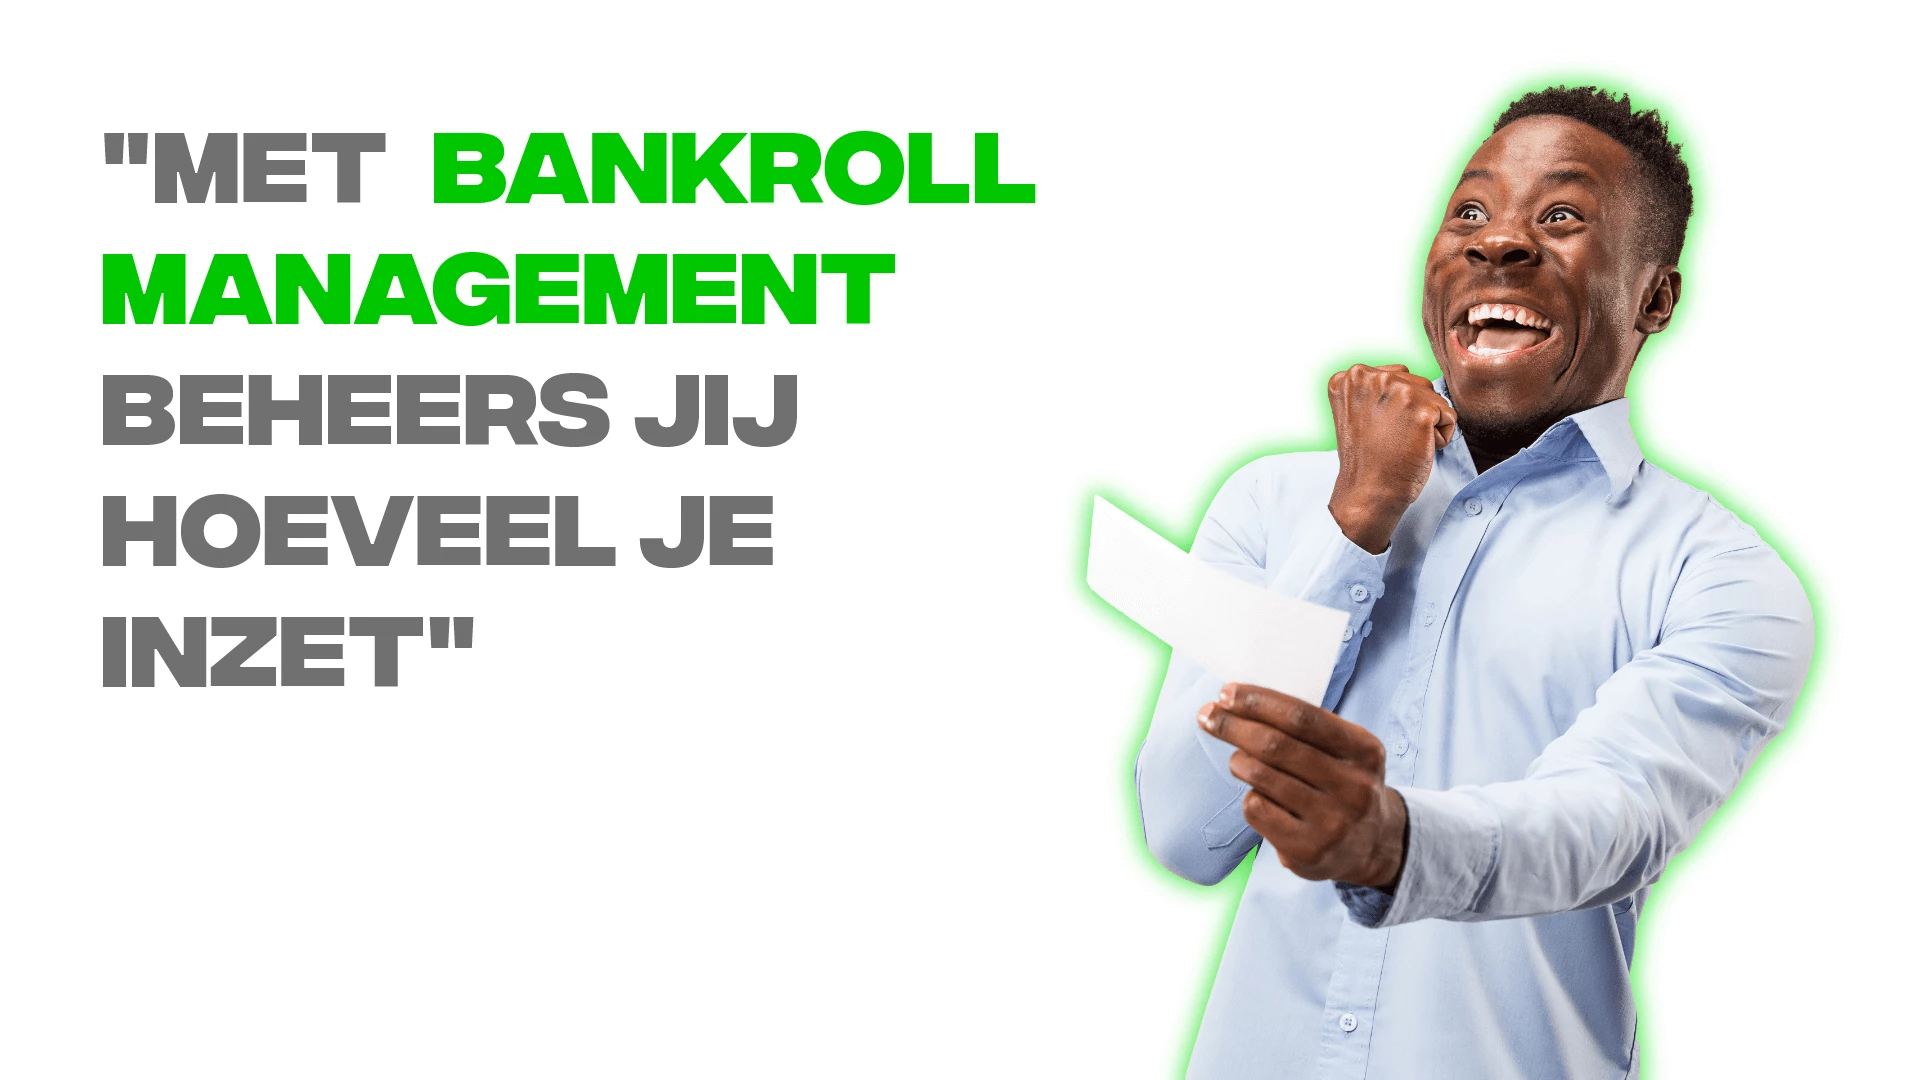 Wat is een bankroll en hoe werkt bankroll management